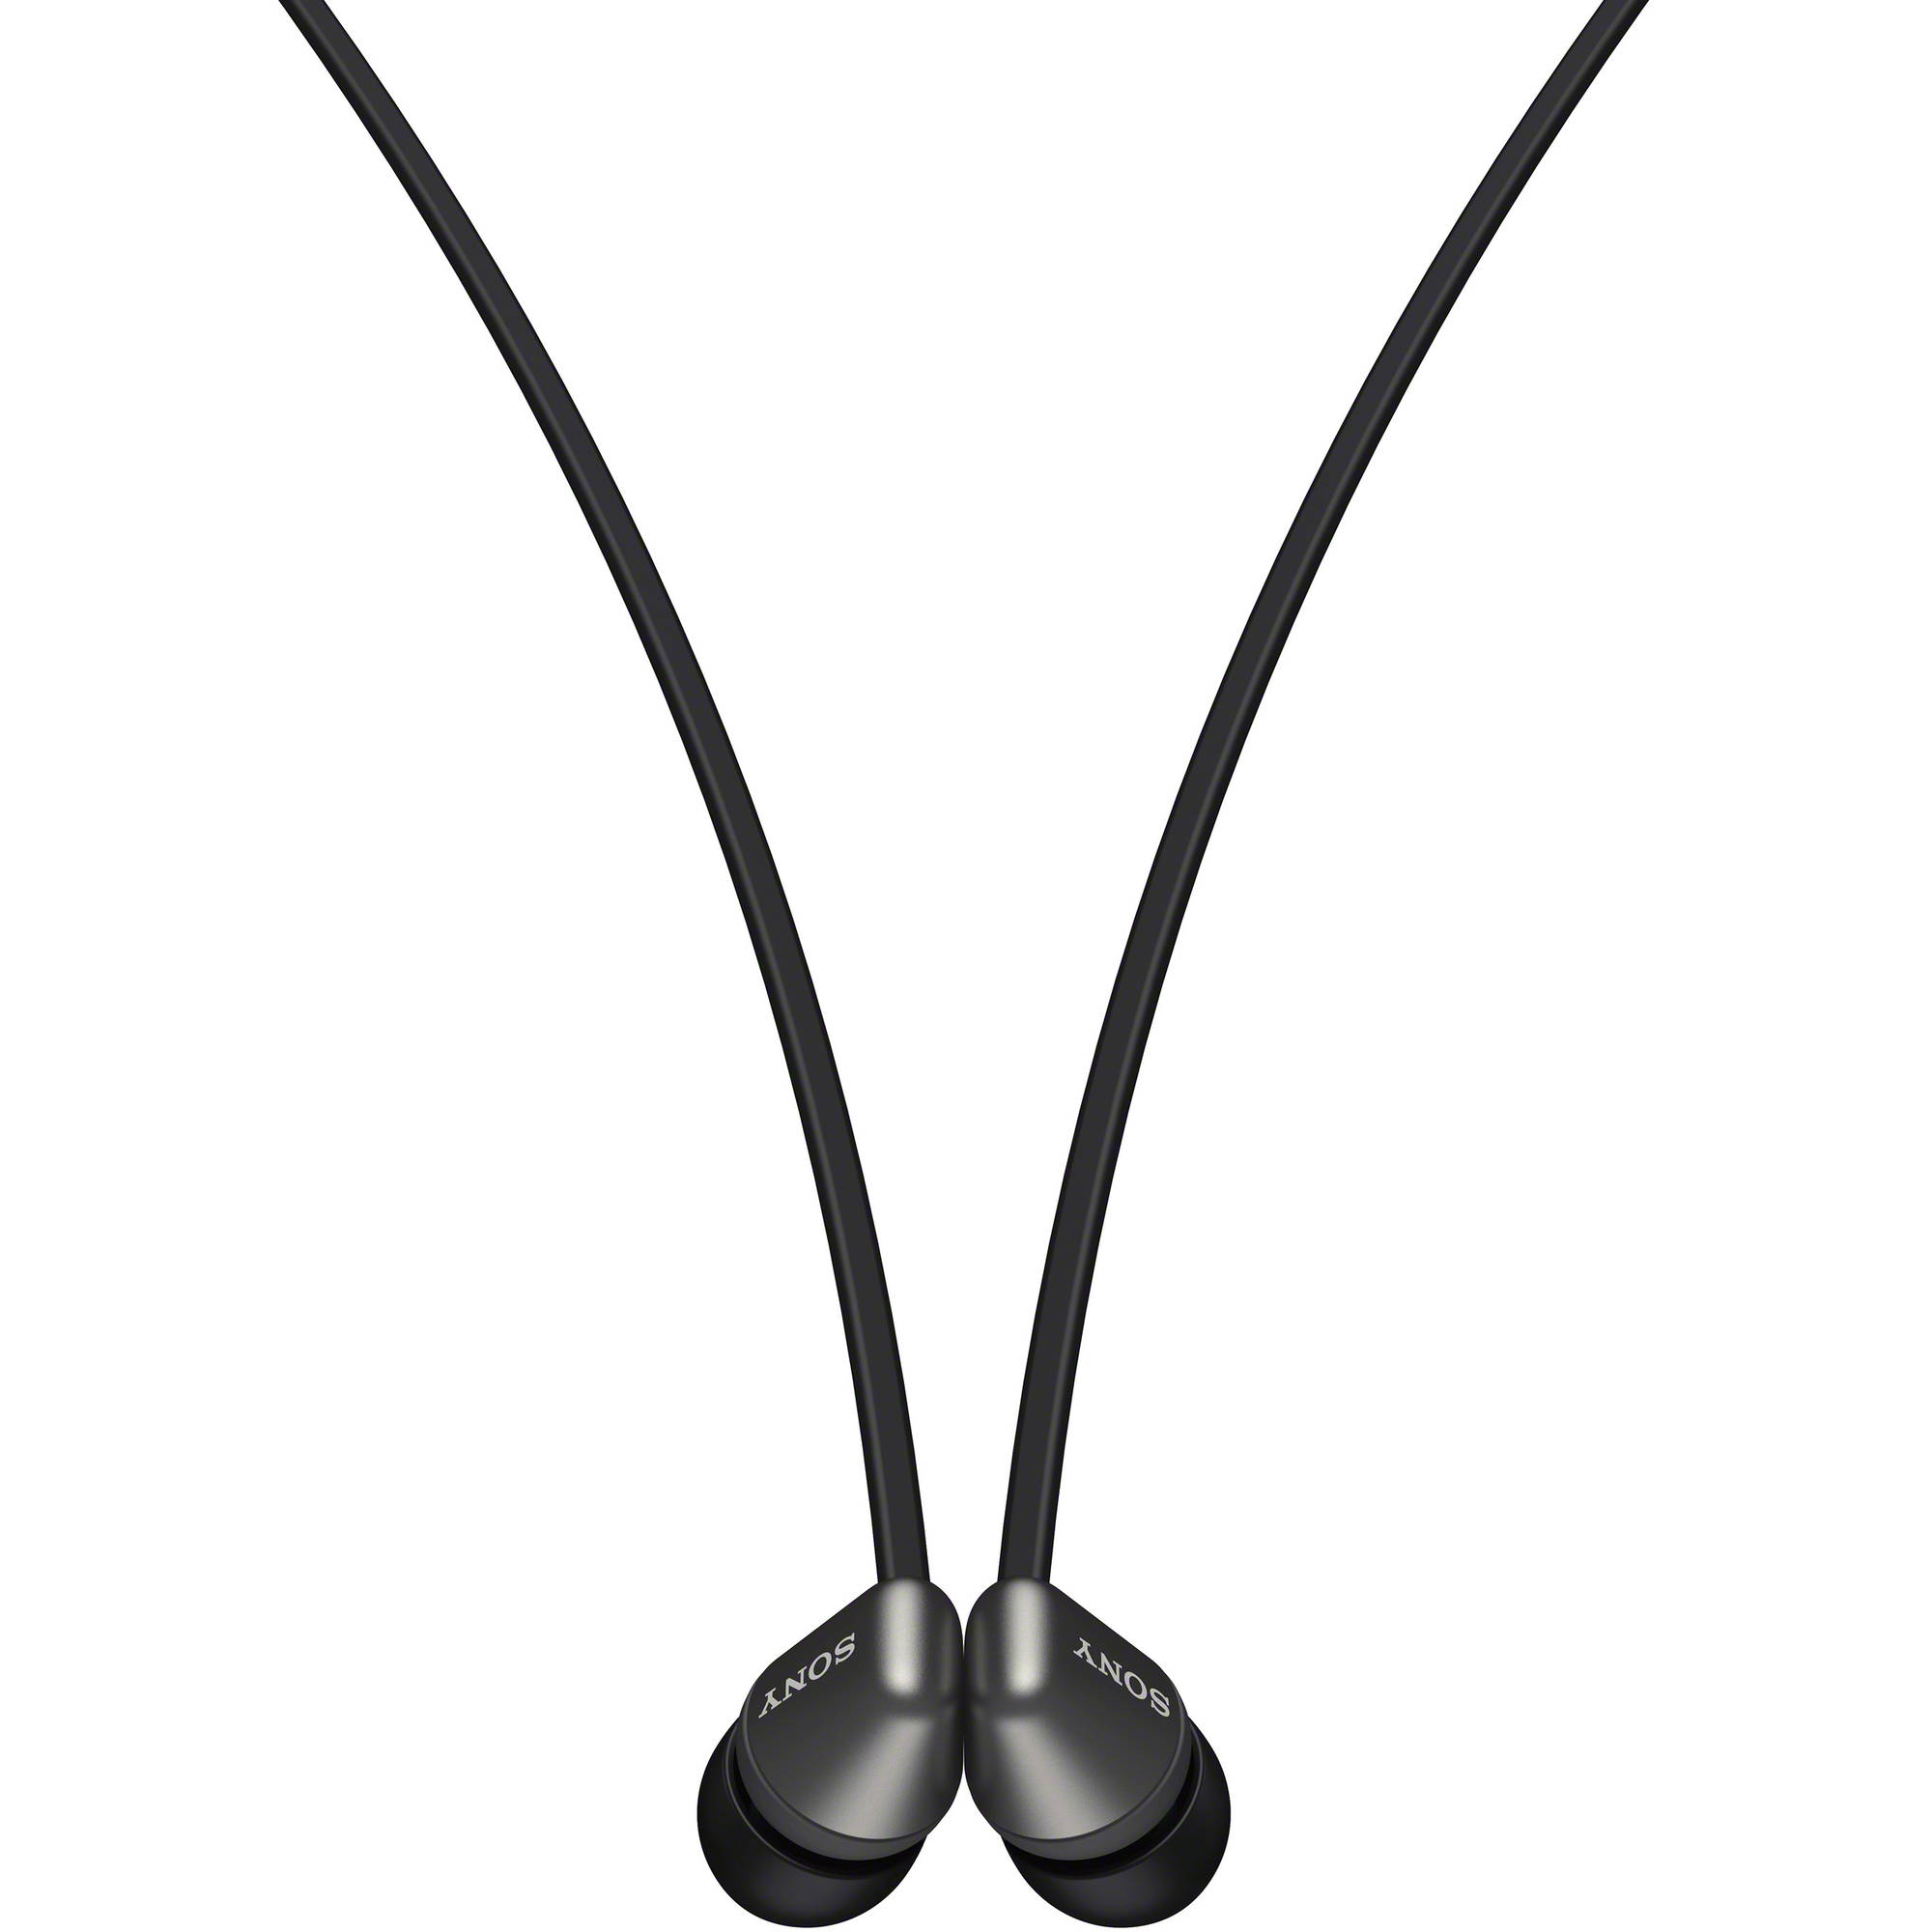 Auriculares inalámbricos inalámbricos de Sony Wi-C310 (negro)